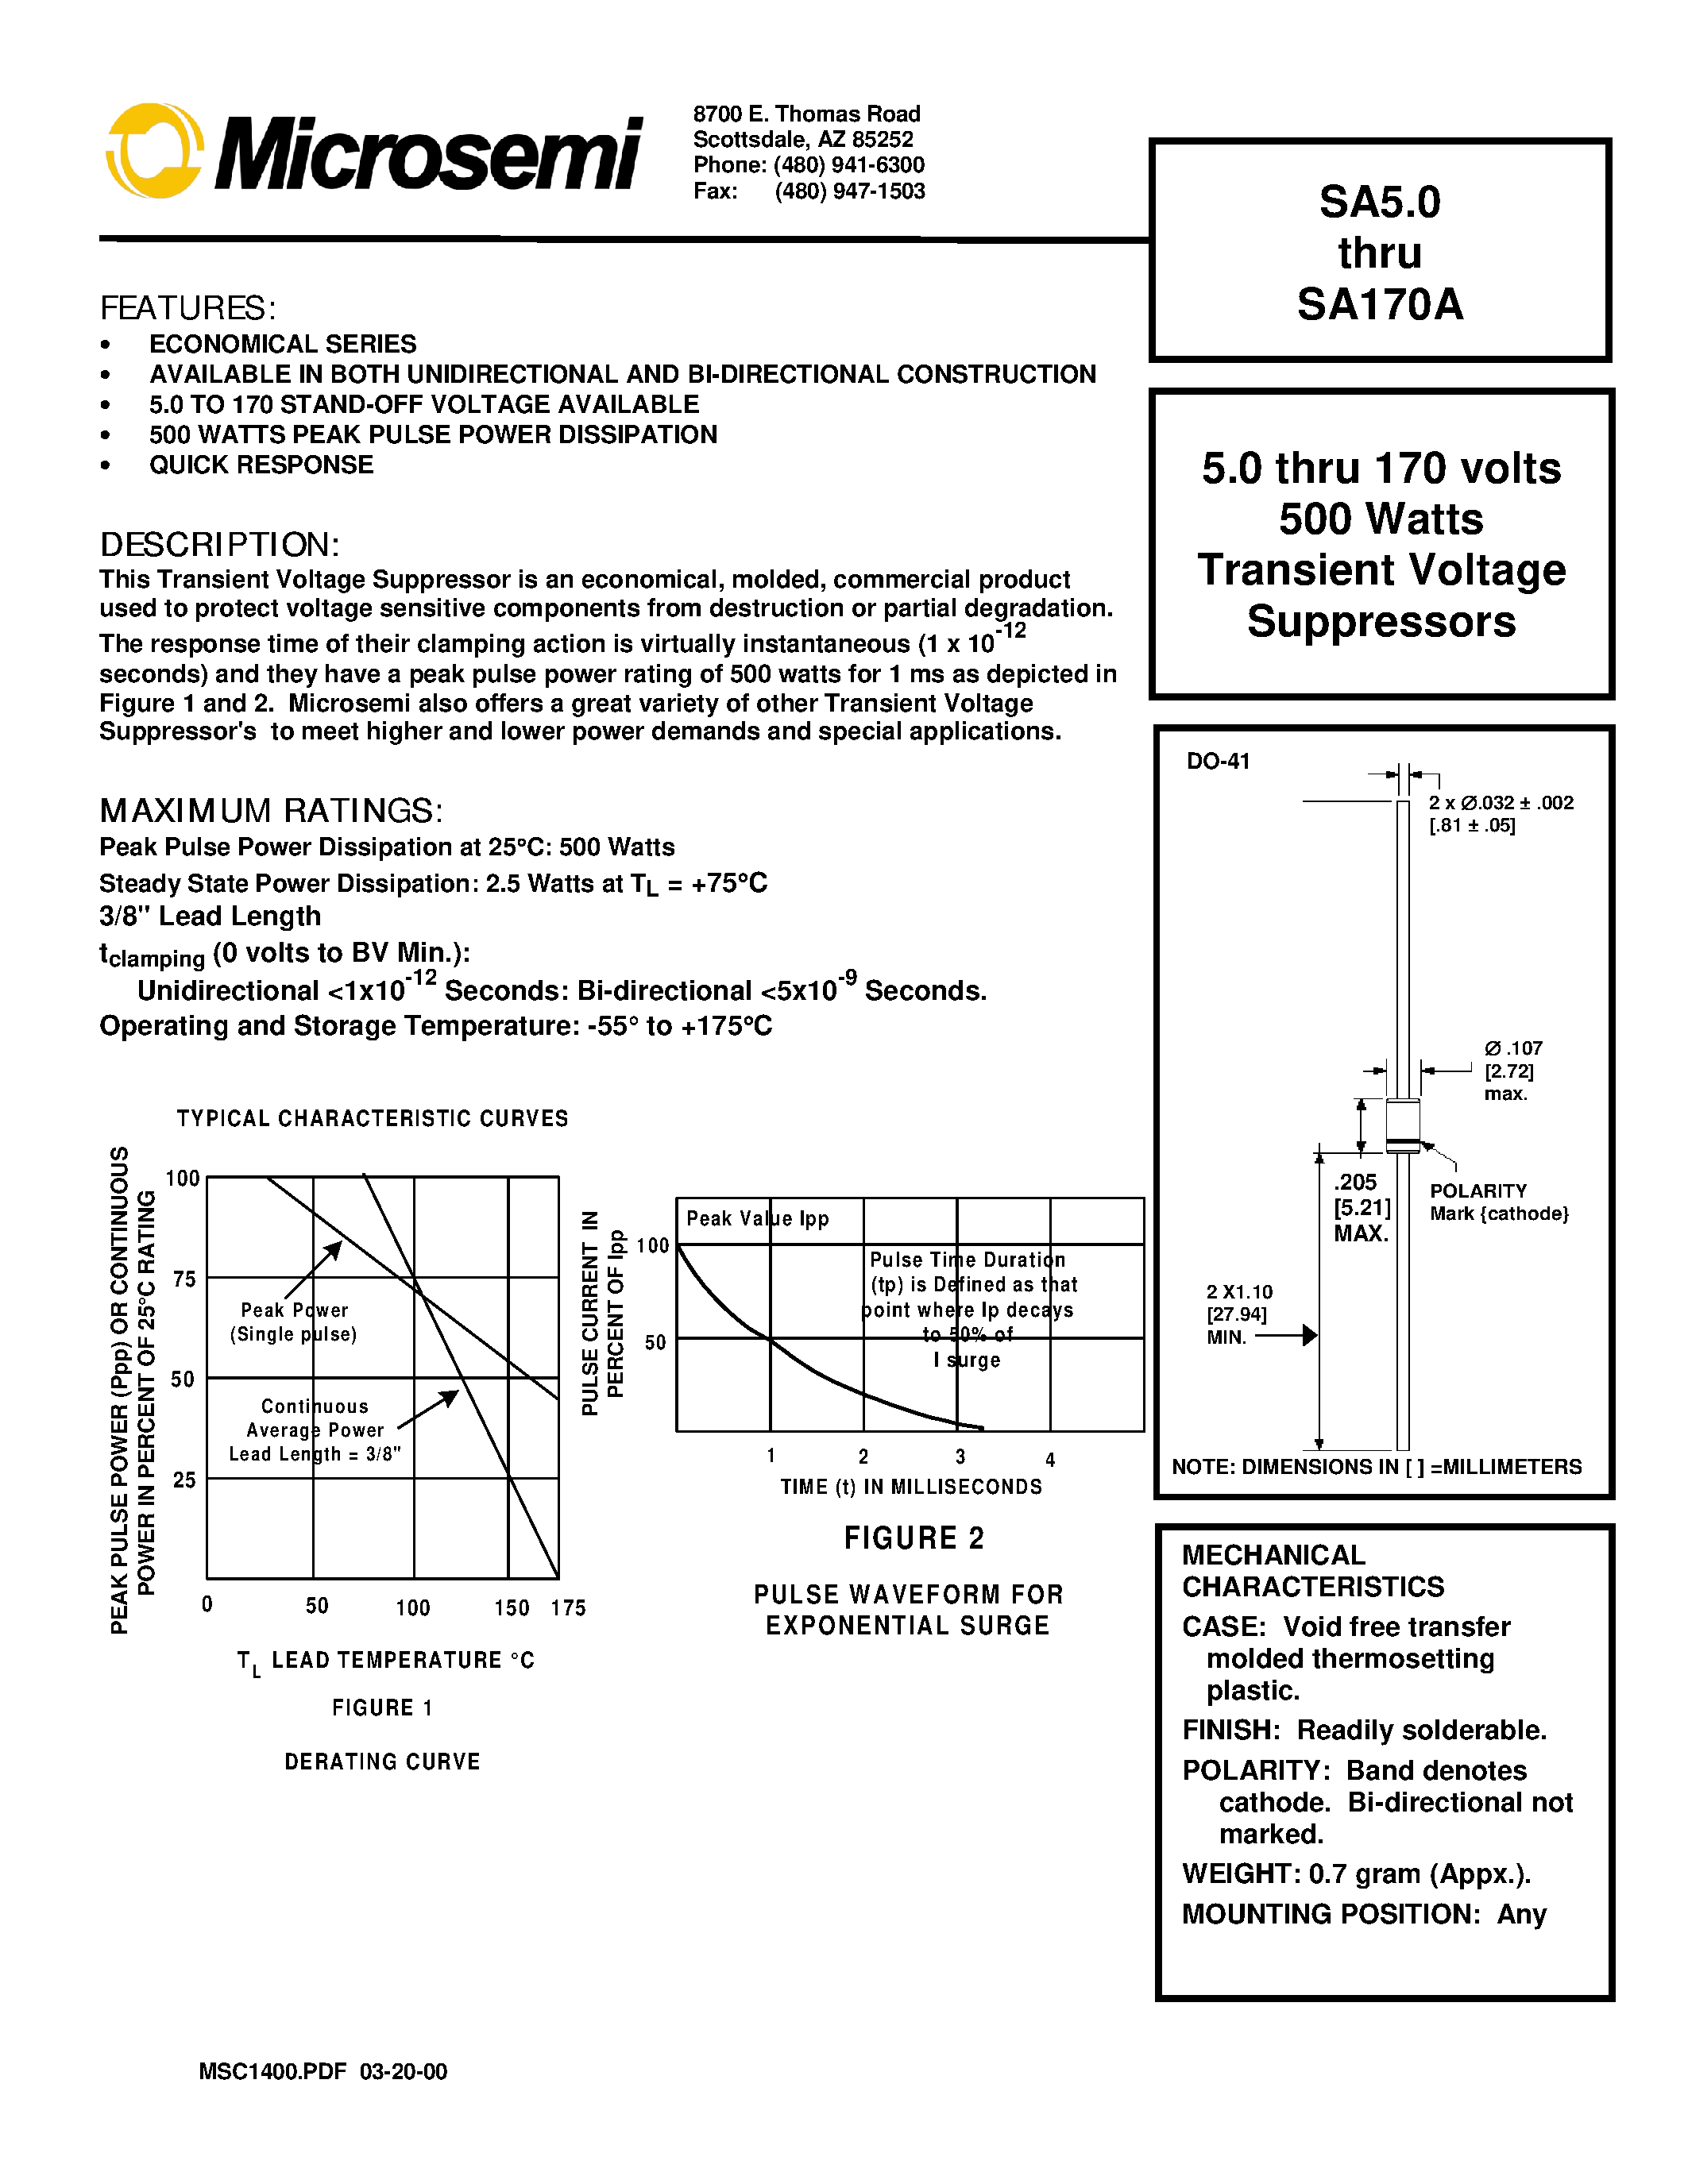 Datasheet SA10 - 5.0 thru 170 volts 500 Watts Transient Voltage Suppressors page 1